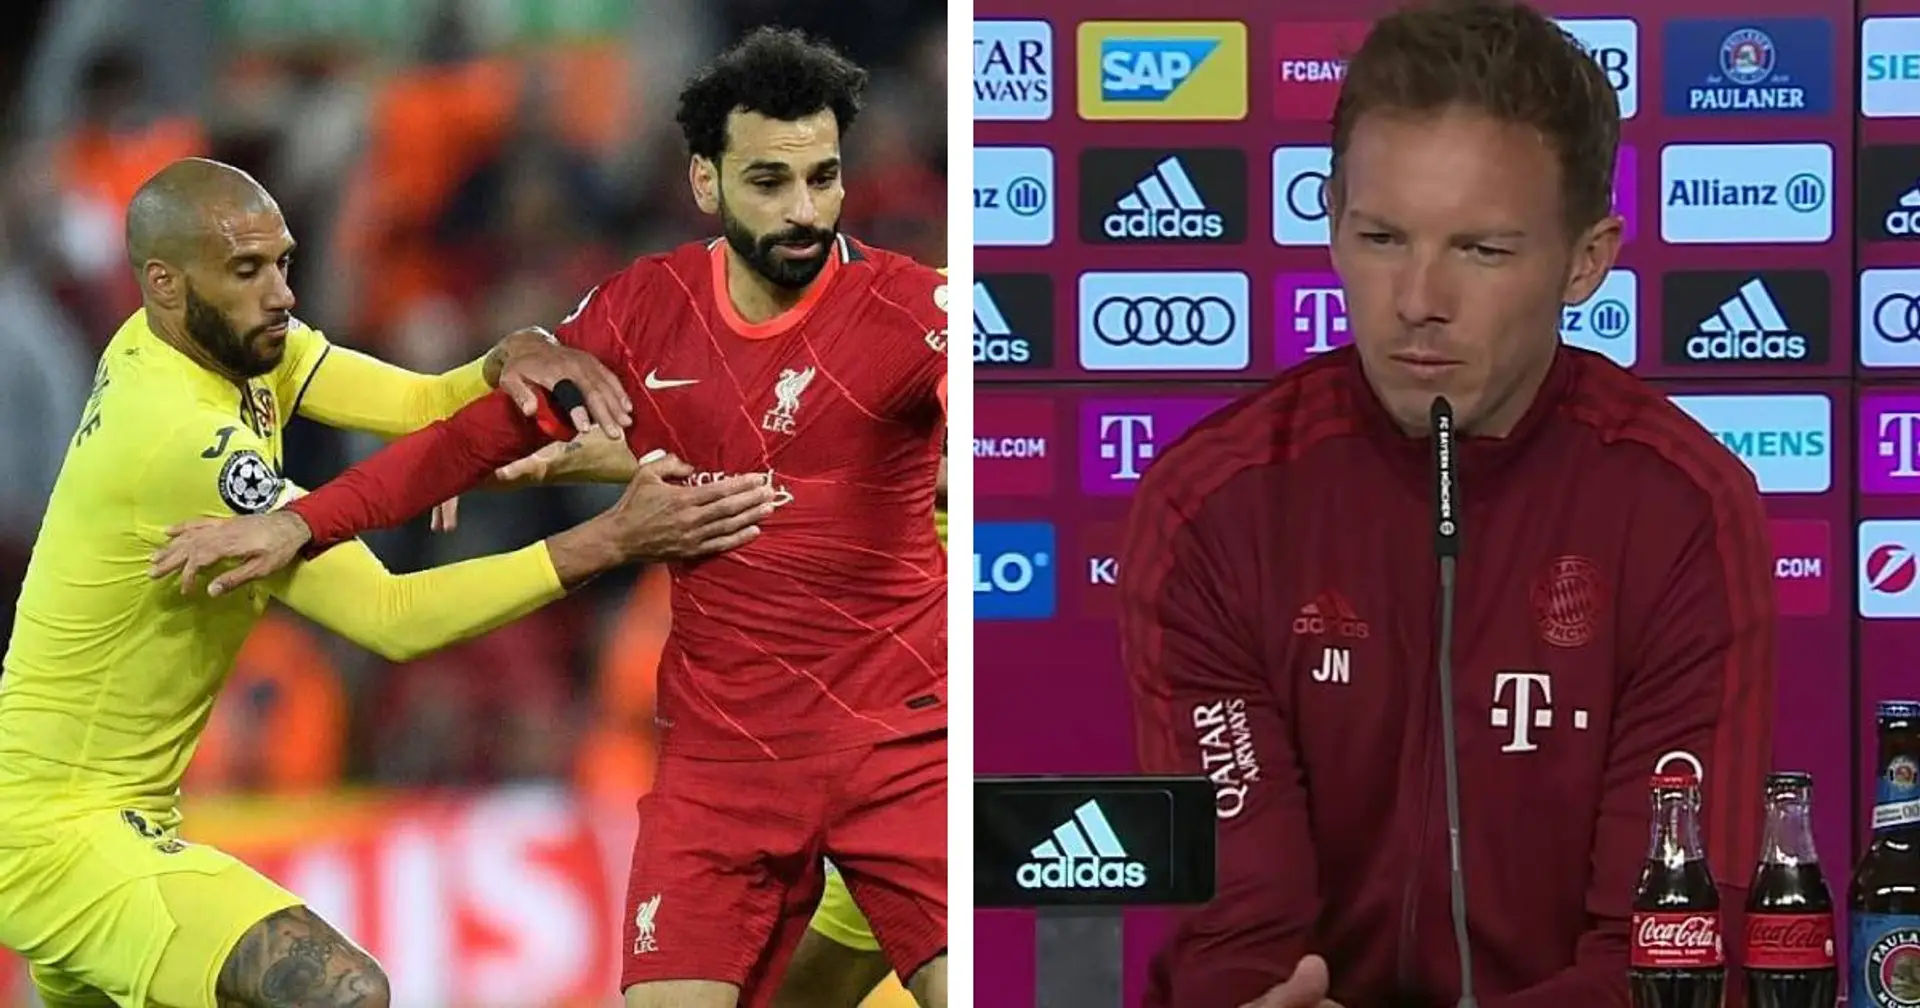 "Das Liverpool-Spiel war ähnlich zu unserem": Nagelsmann erklärt, was den Bayern vs. Villarreal gefehlt hat